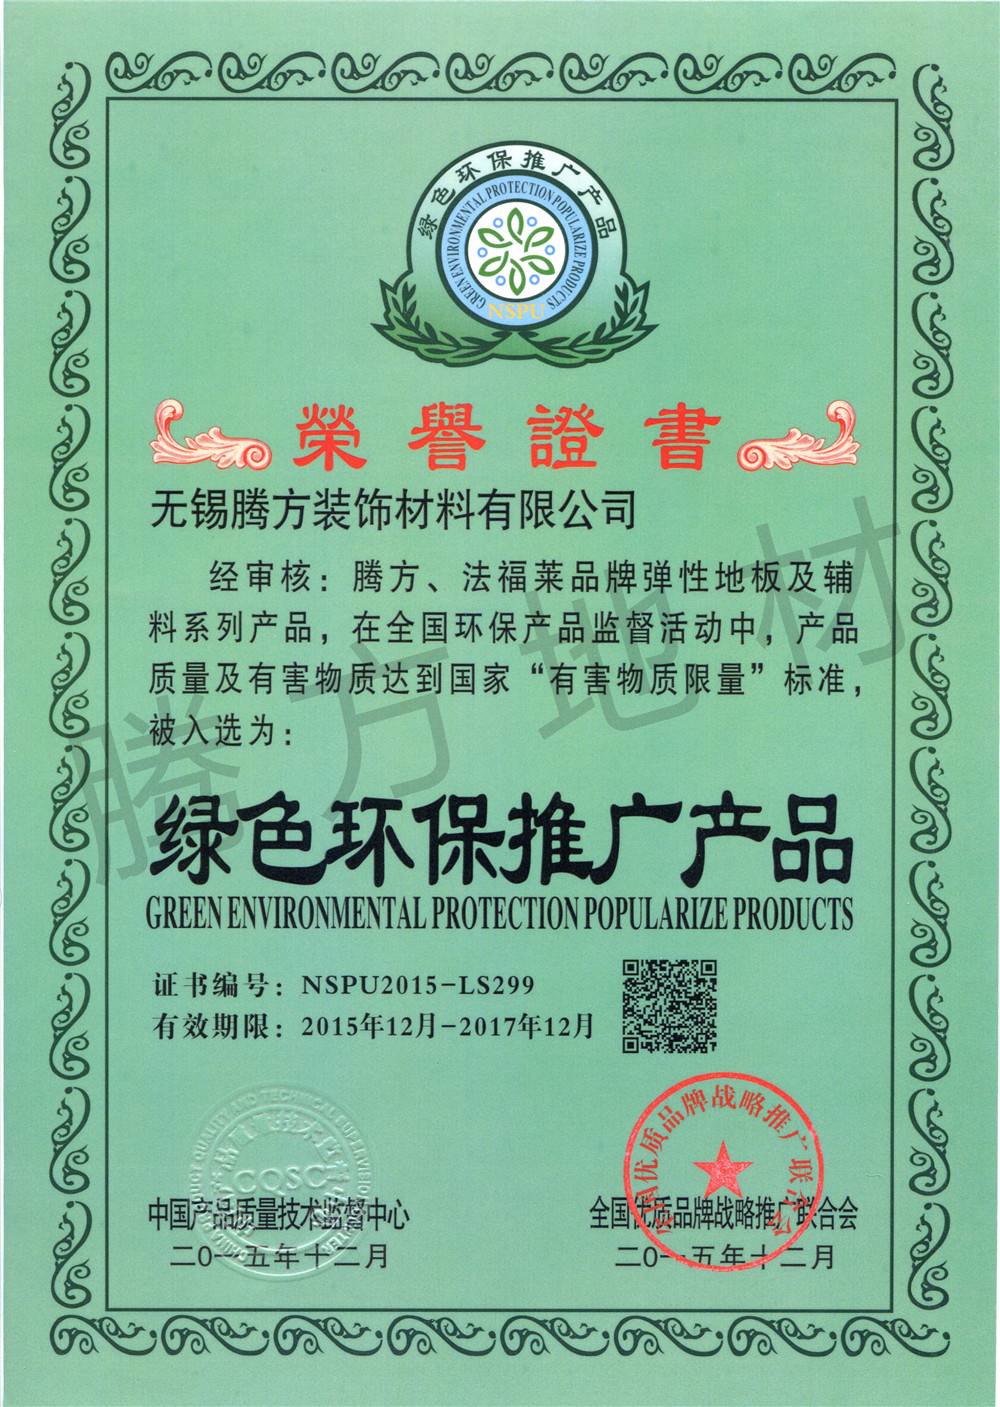 腾方产品荣获绿色环保推广产品证书